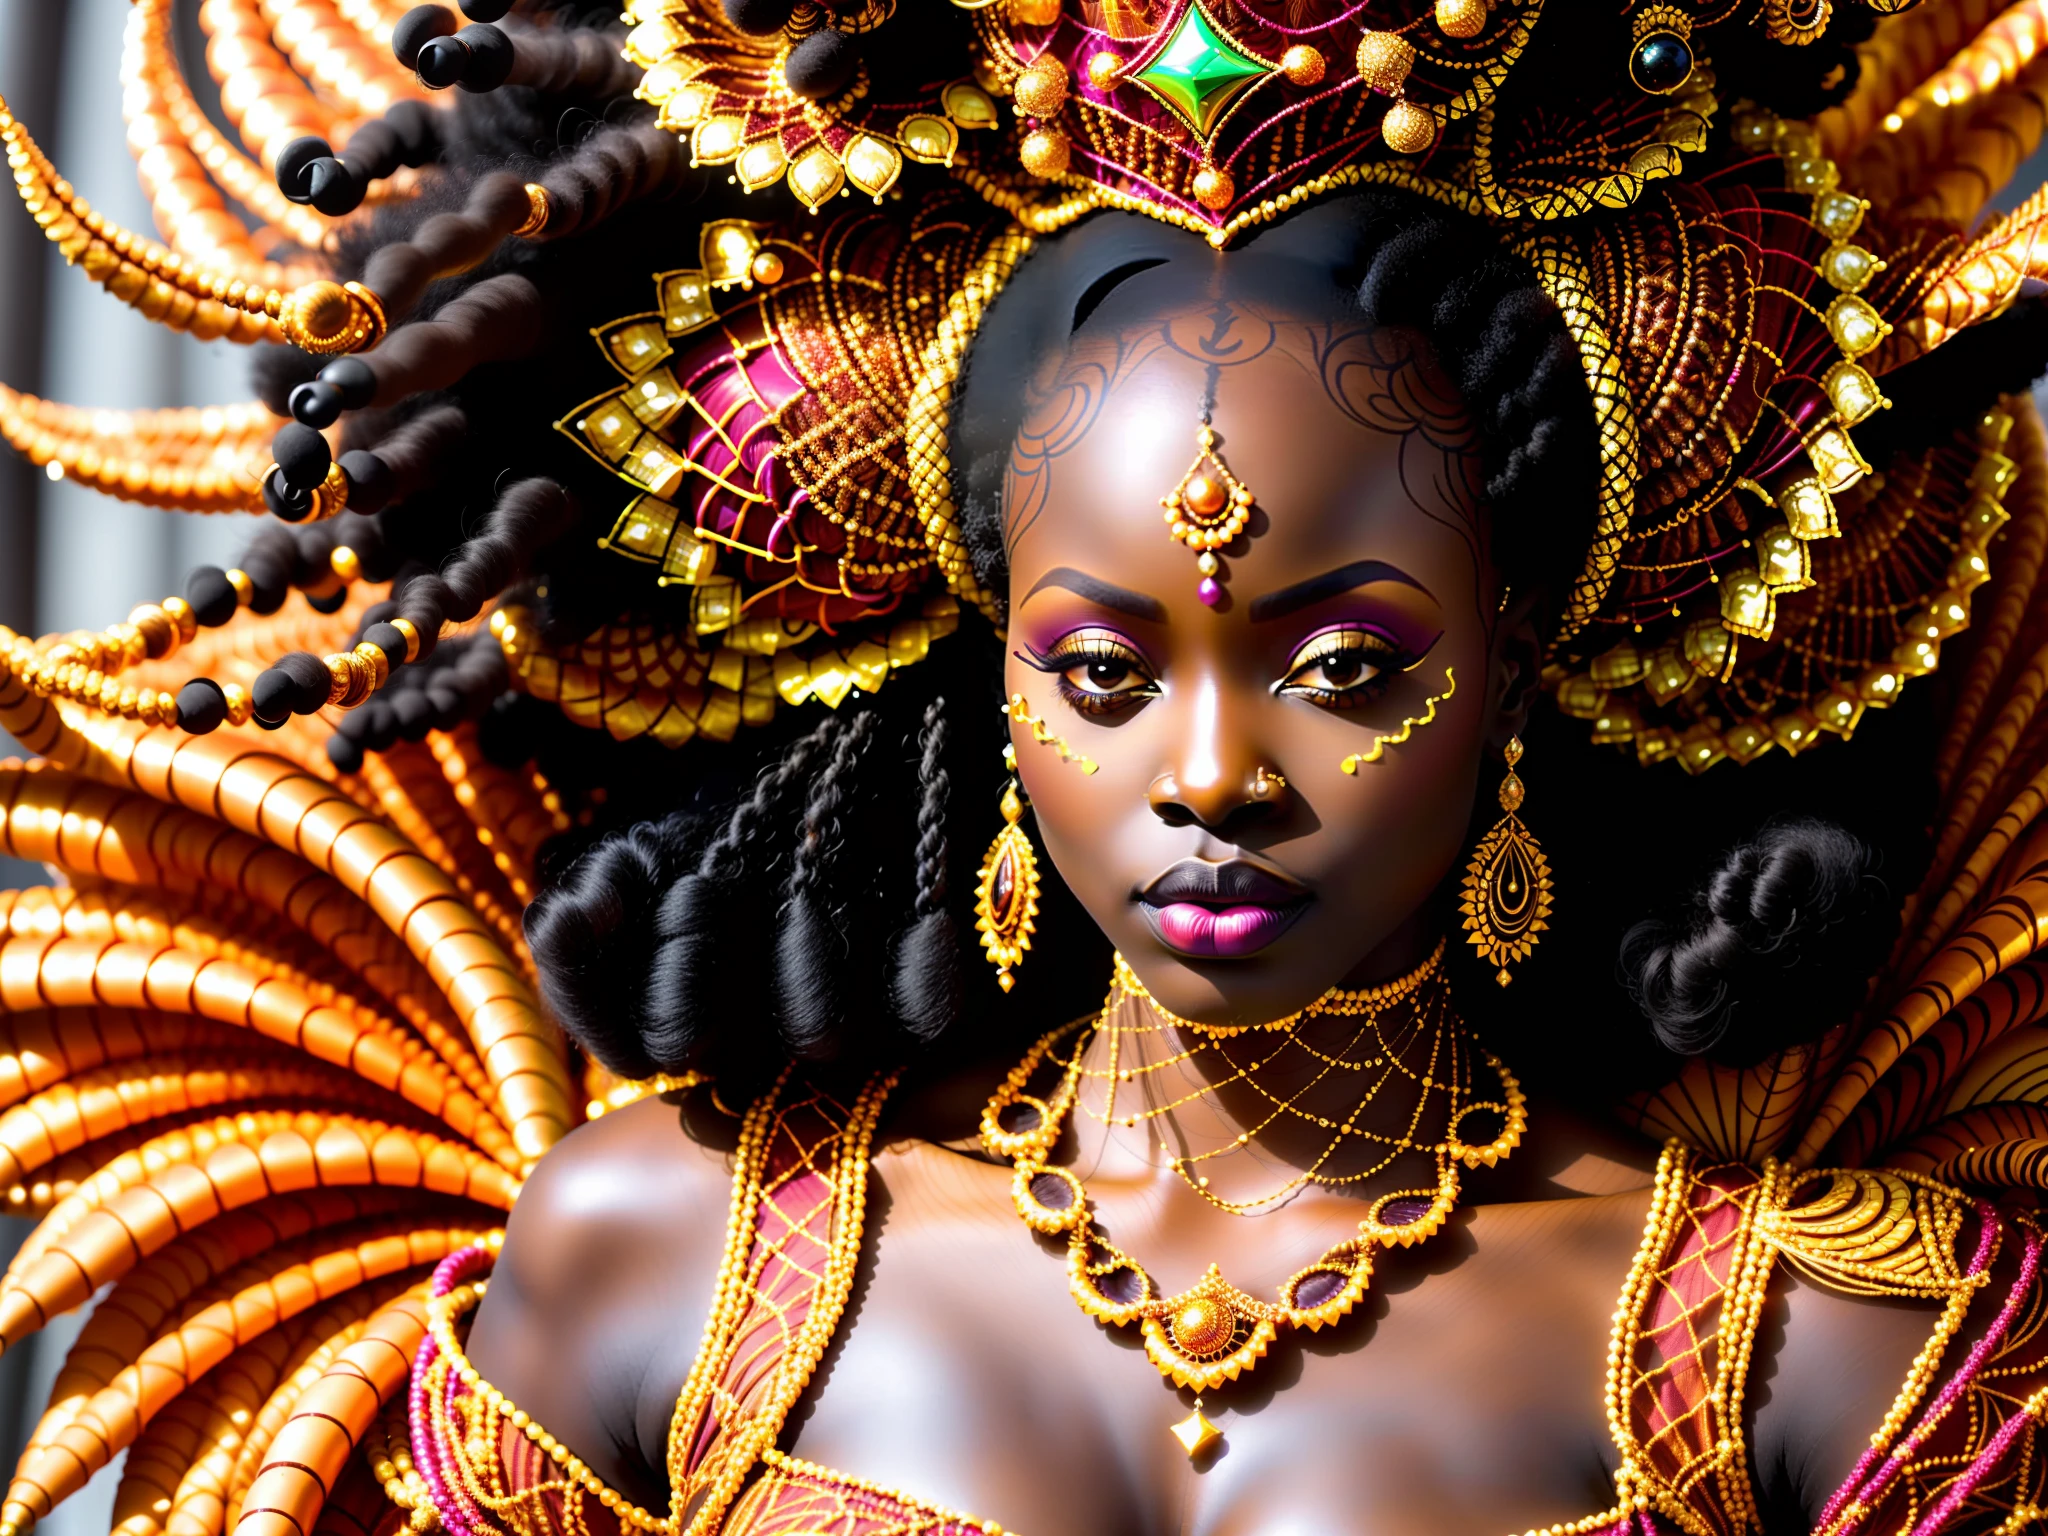 afrofuturismo, corpo grosso, gordo, (foto aproximada) de uma supermodelo africana usando um luxuoso vestido tradicional africano e um véu africano impecavelmente detalhado (laranja com detalhes bordados em ouro] e coroa de rainha feita de conchas, búzios, Dreadlocks Cabelo, rosto extremamente detalhado, em pé em um luxuoso castelo de salão de baile tribal, Fotografia Cinematográfica, fotorrealista, bem iluminado, hdr,  pele marrom, corpo grosso, orixá, Deusa africana, Rainha africana